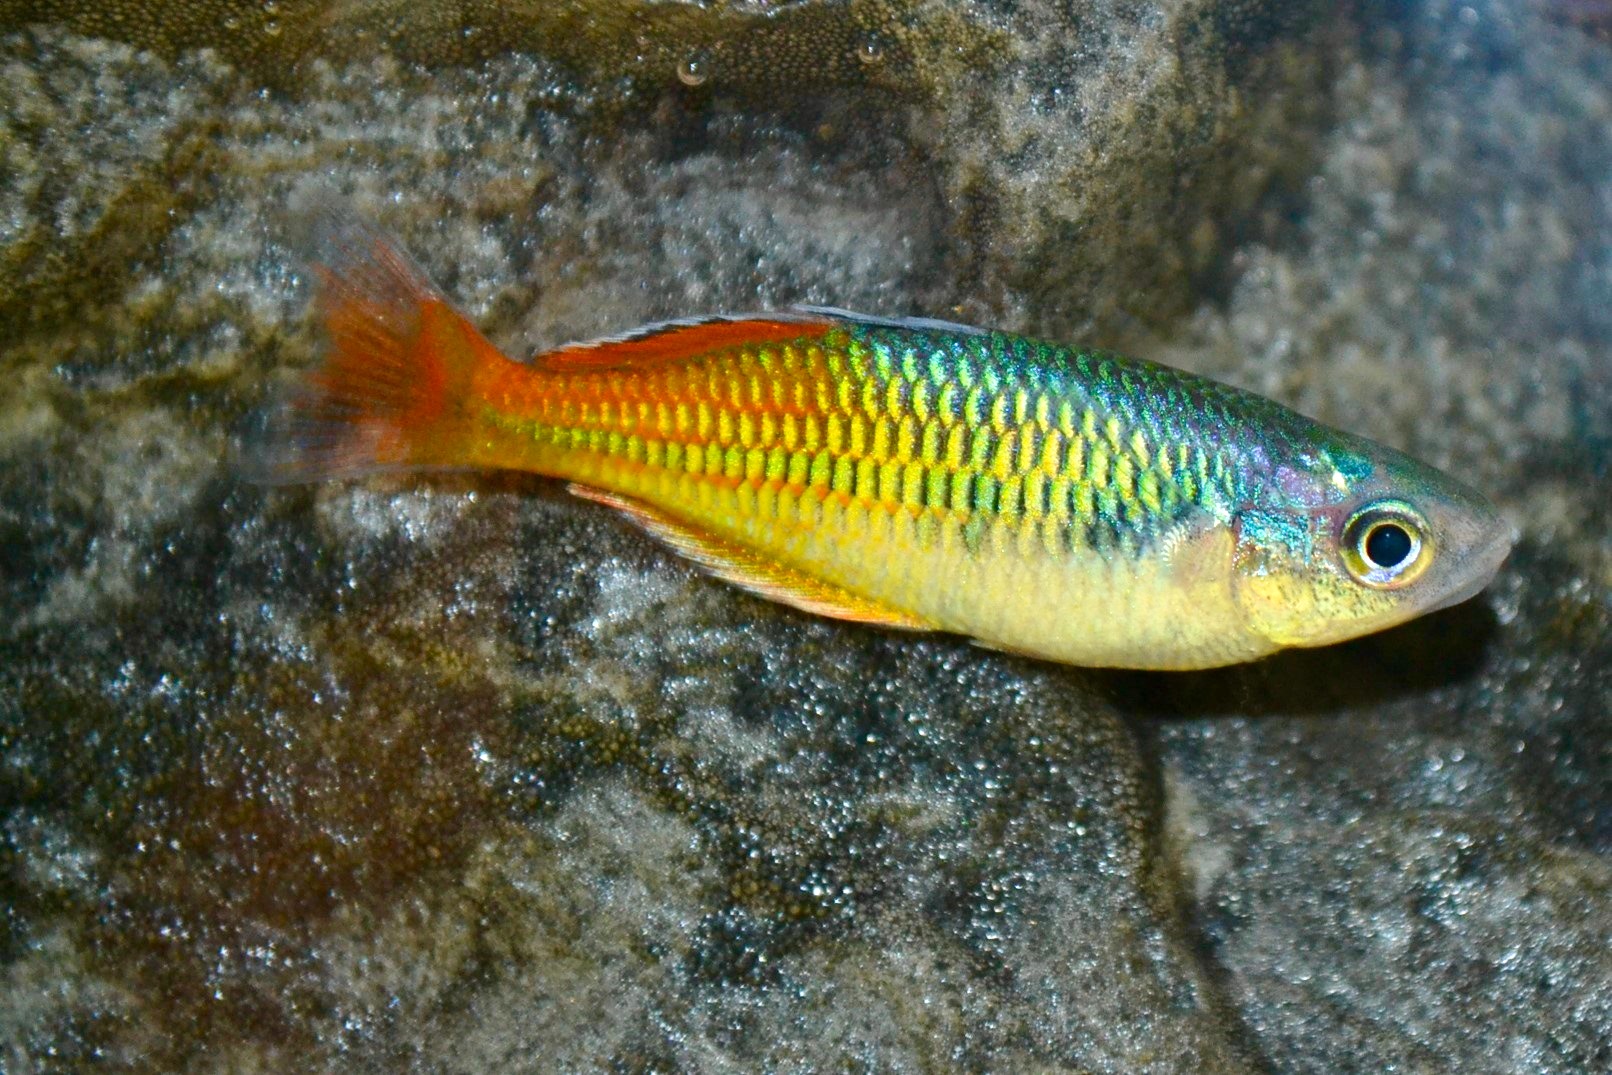 Boesemans Regenbogenfisch DNZ (Melanotaenia boesemani)